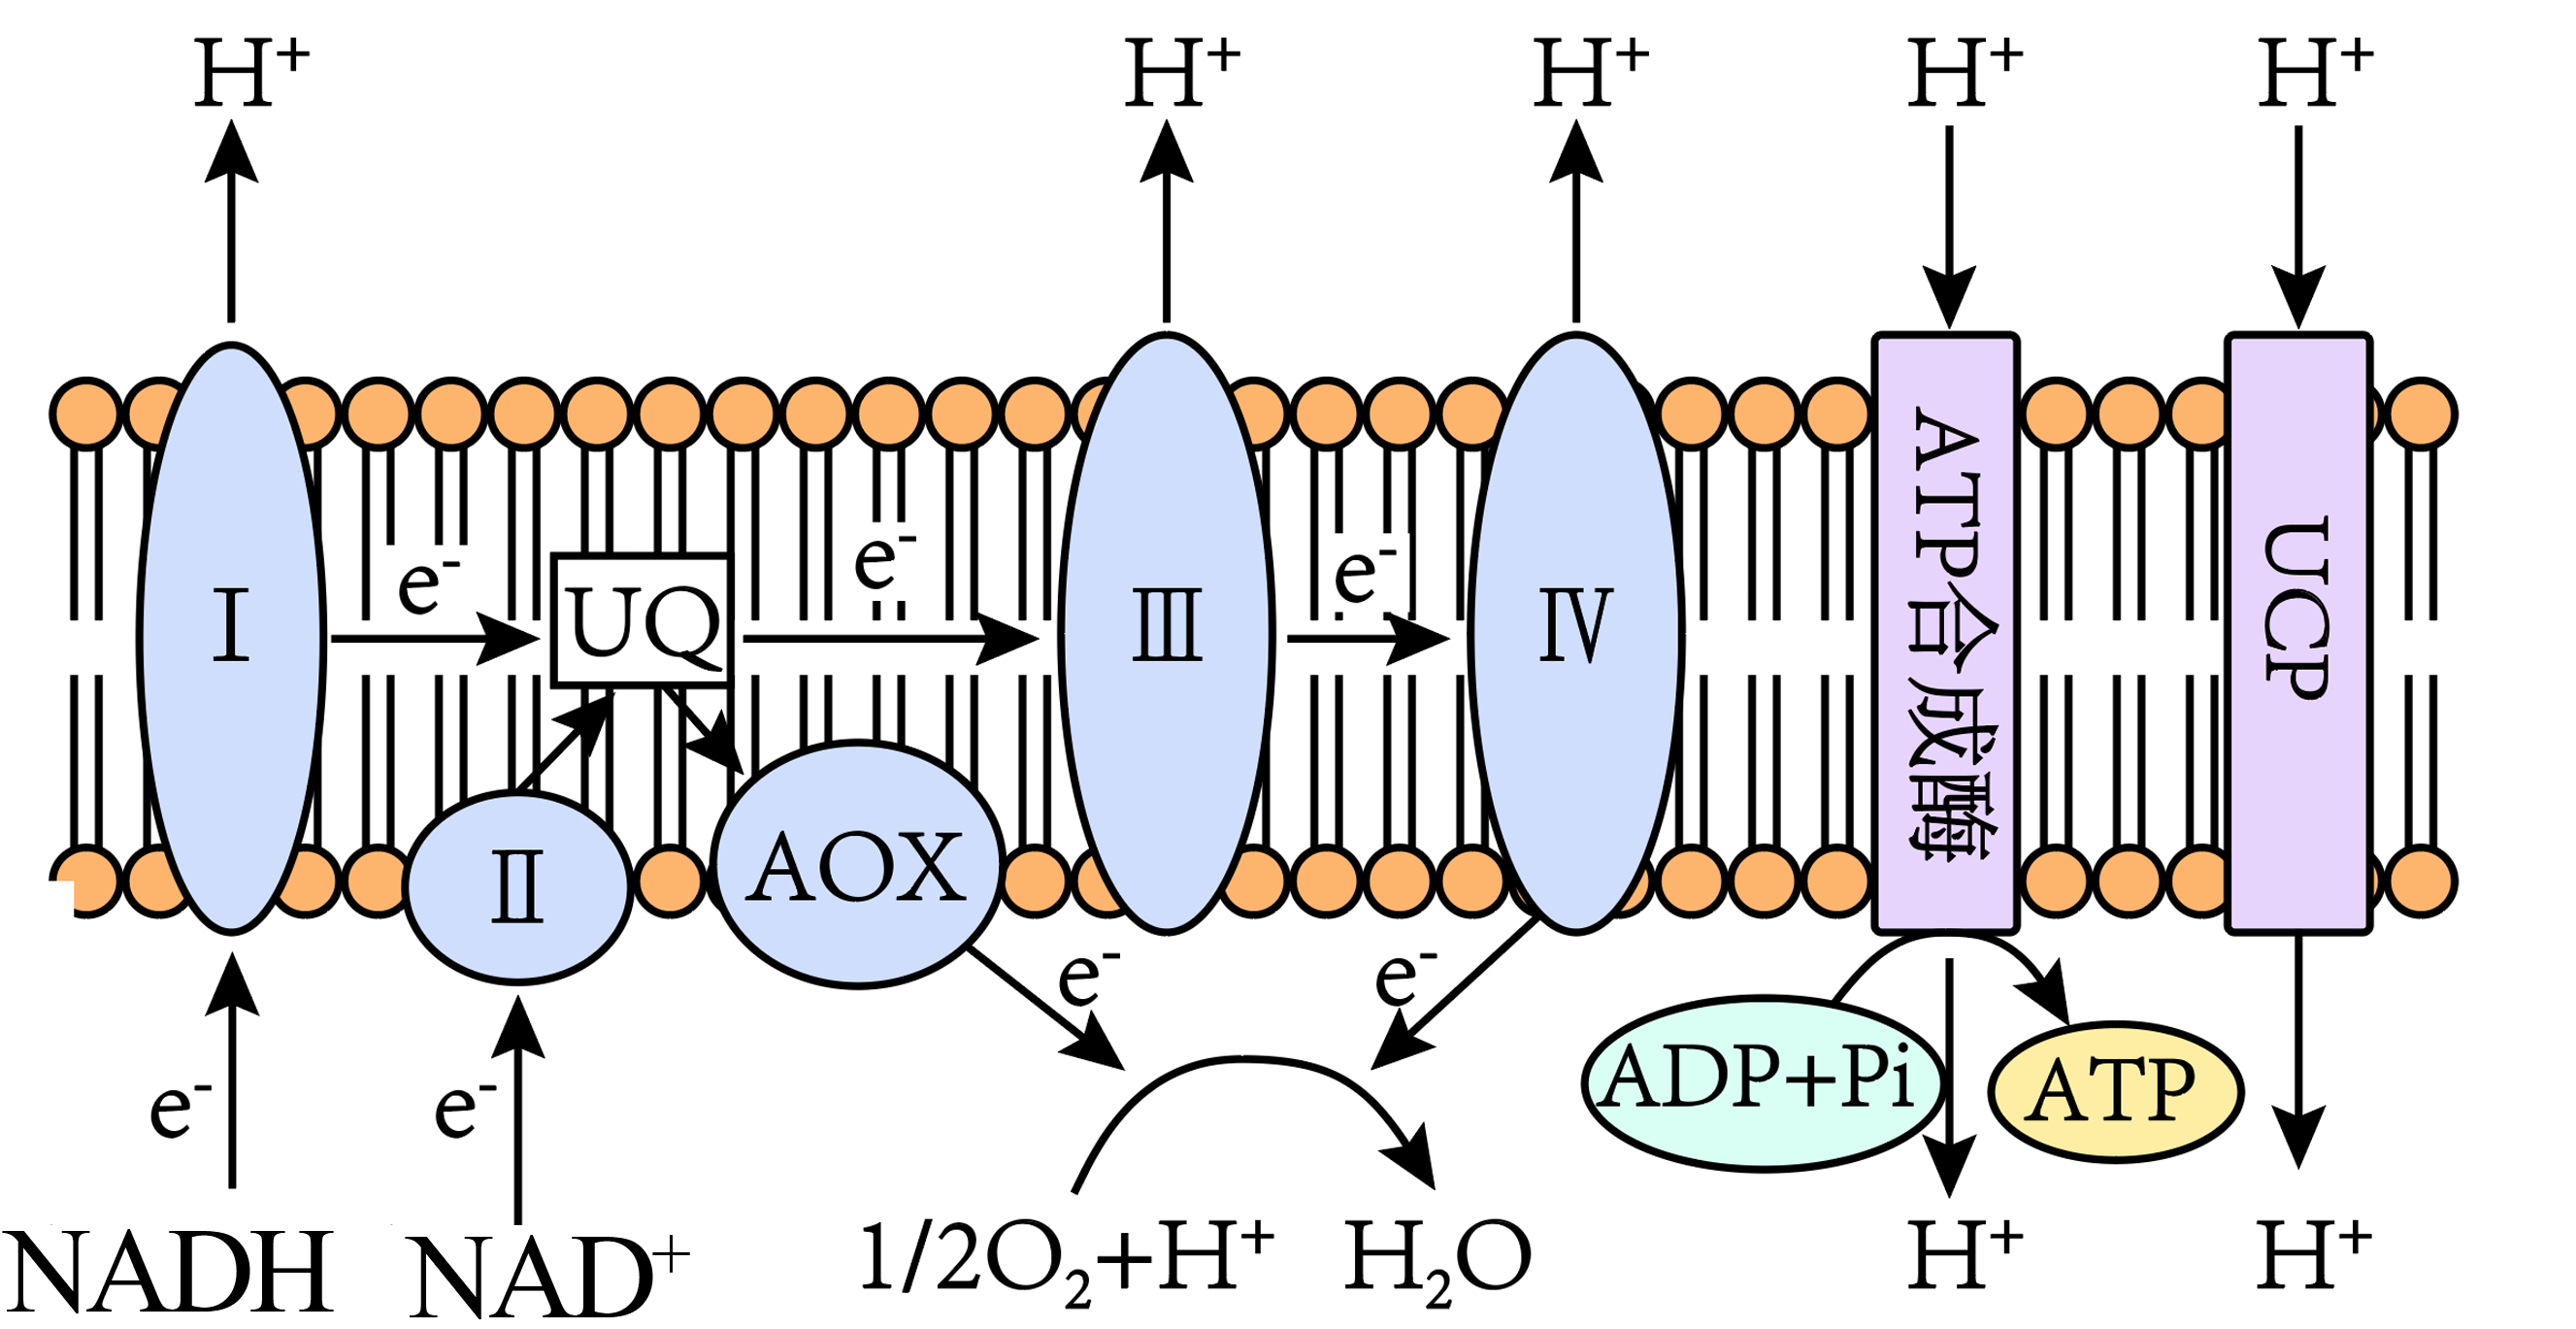 高等动植物细胞进行有氧呼吸第三阶段时,nadh中的电子经uq,蛋白复合体